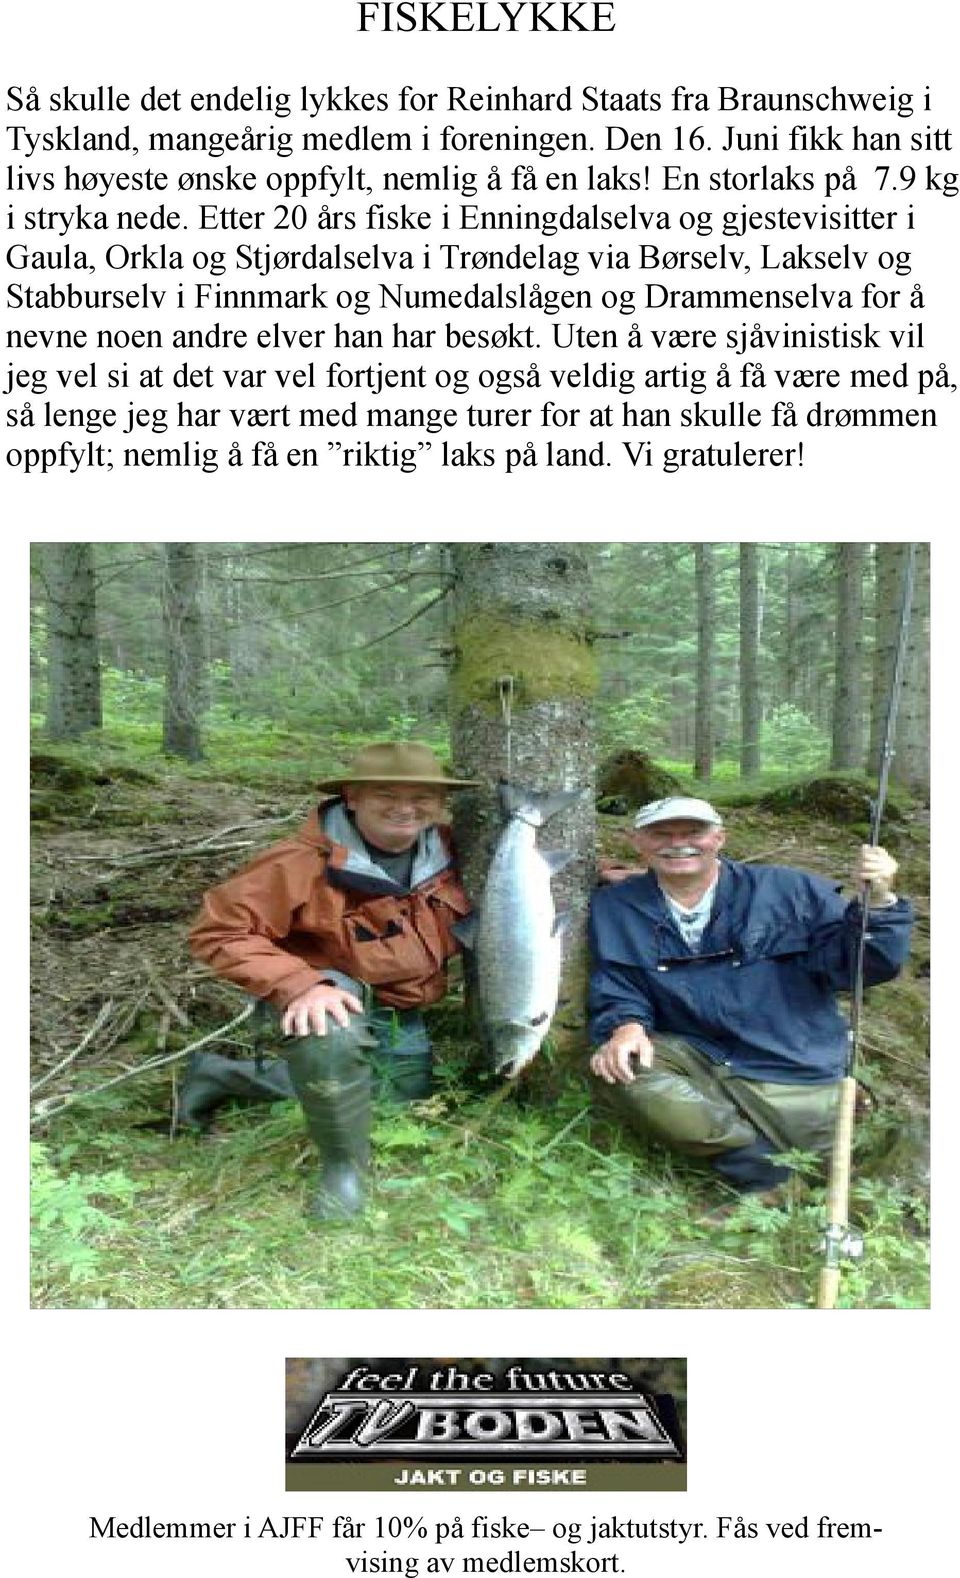 Etter 20 års fiske i Enningdalselva og gjestevisitter i Gaula, Orkla og Stjørdalselva i Trøndelag via Børselv, Lakselv og Stabburselv i Finnmark og Numedalslågen og Drammenselva for å nevne